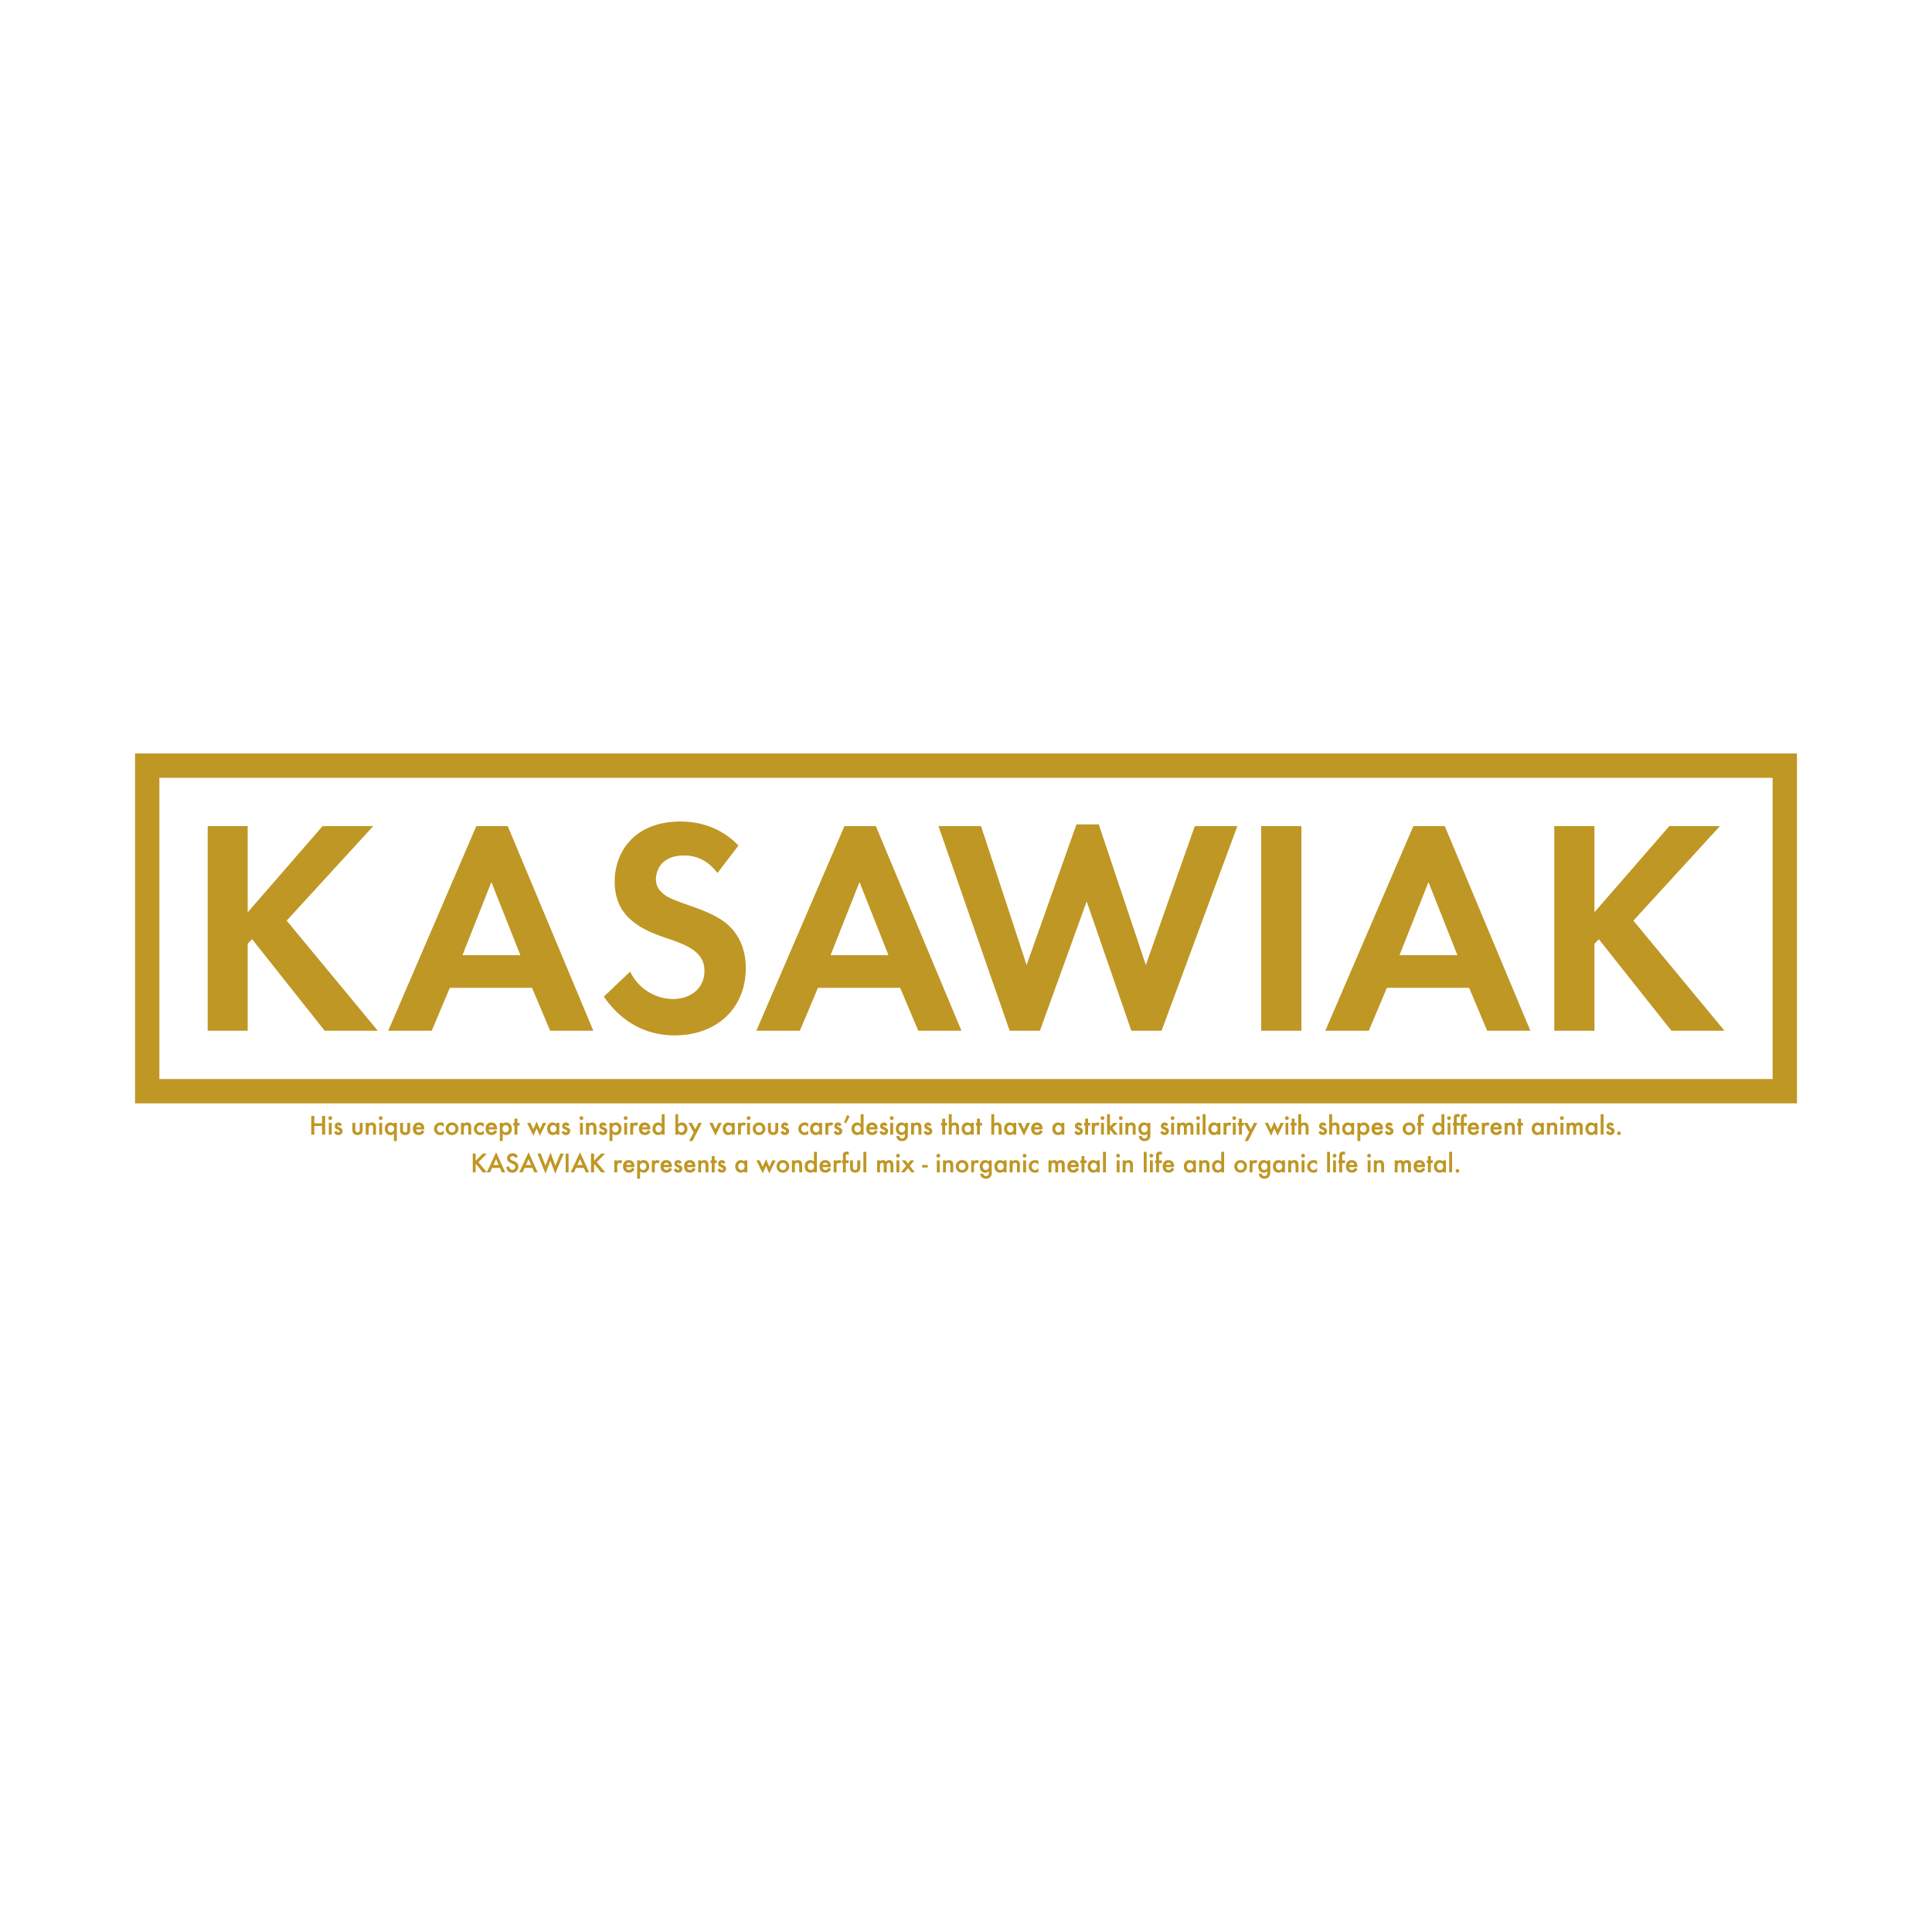 About KASAWIAK